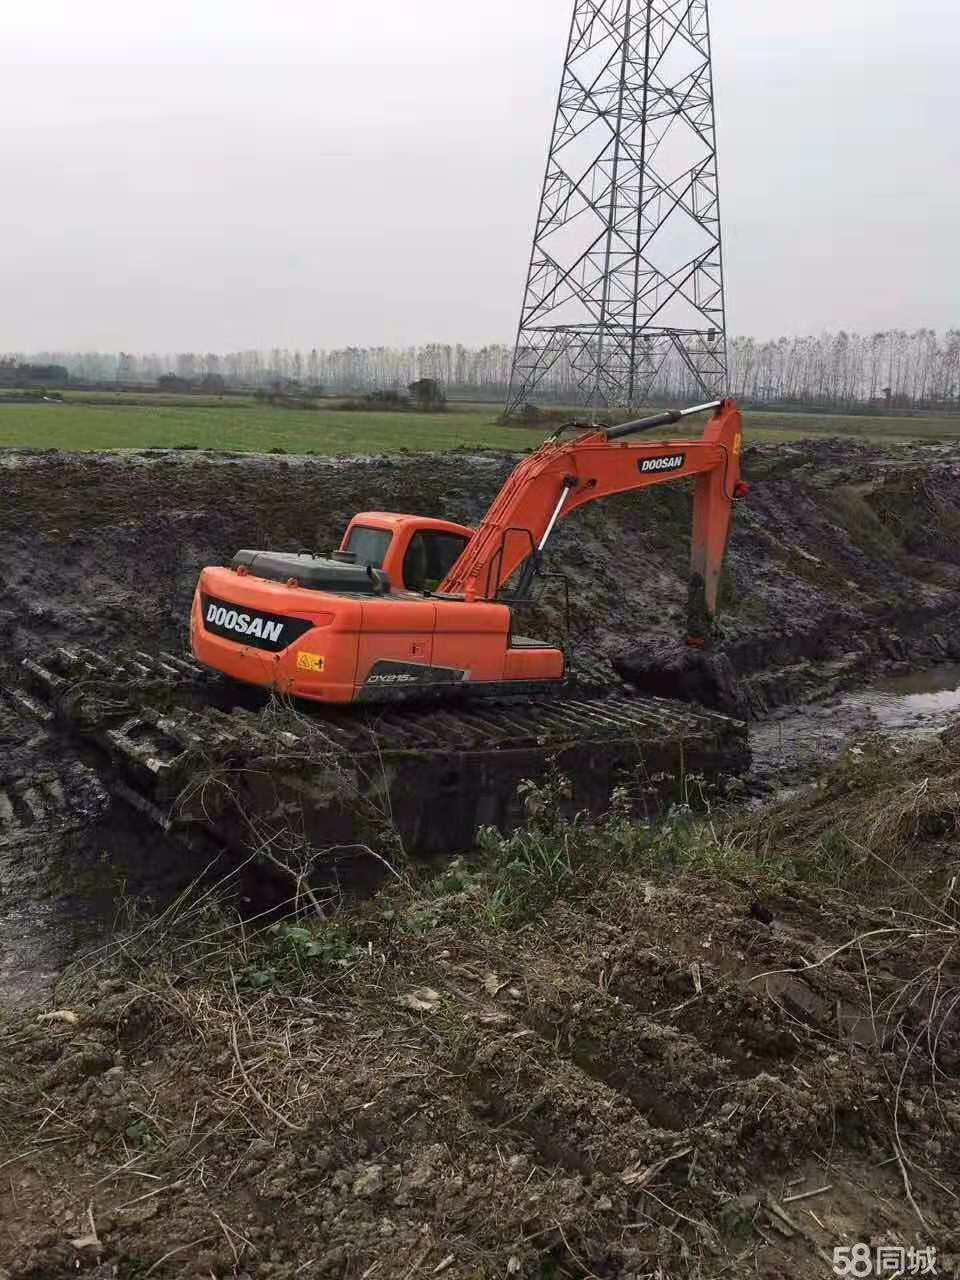 【乌兰察布】生产
水挖机出租
长期供应